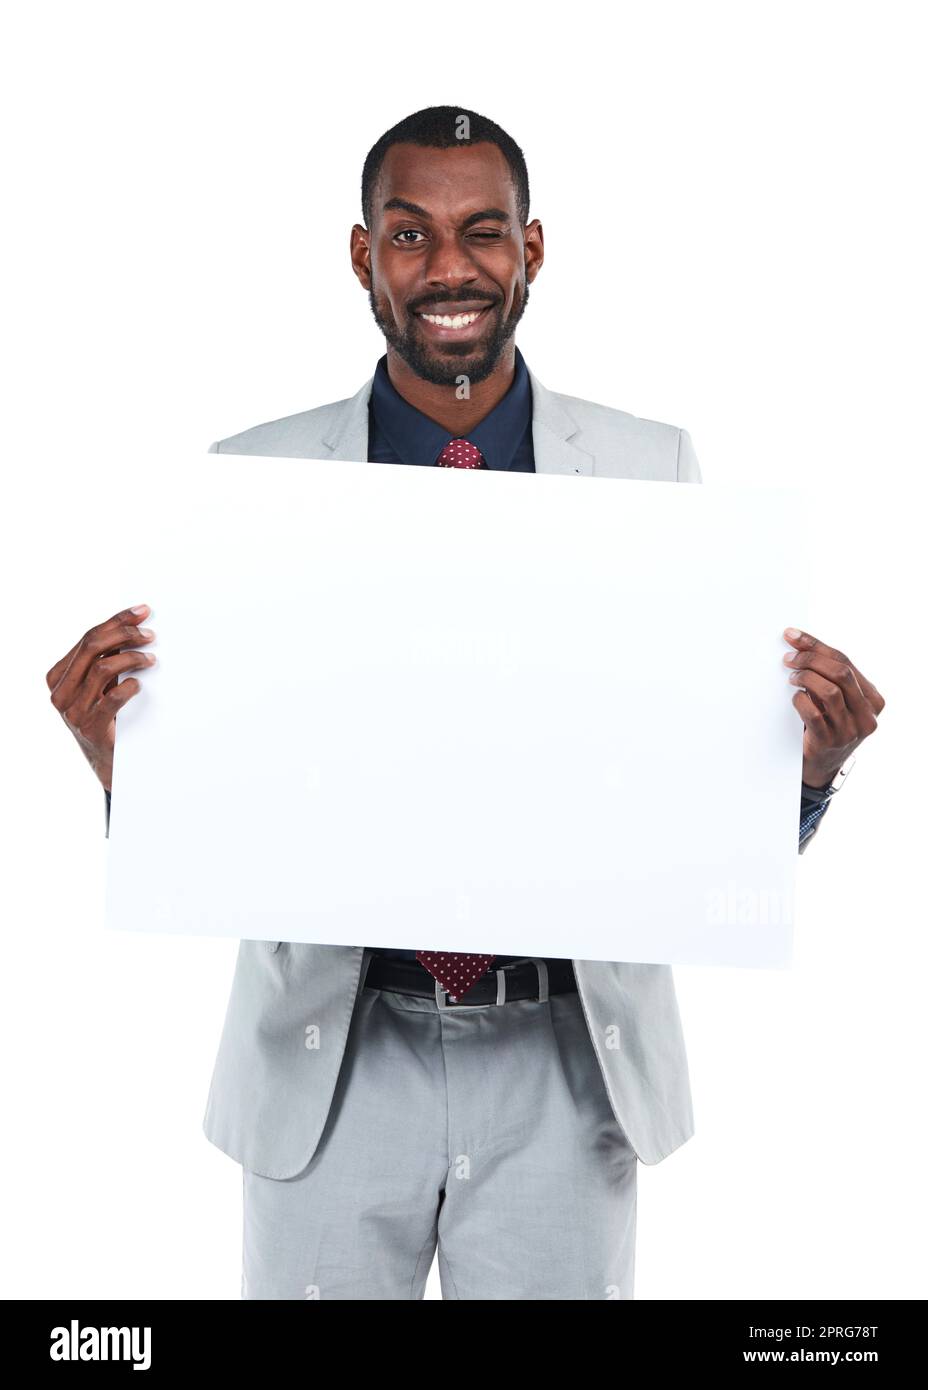 Lassen Sie uns das Wort herausholen. Studioaufnahme eines jungen Geschäftsmannes, der ein leeres Plakat vor einem weißen Hintergrund hochhält. Stockfoto